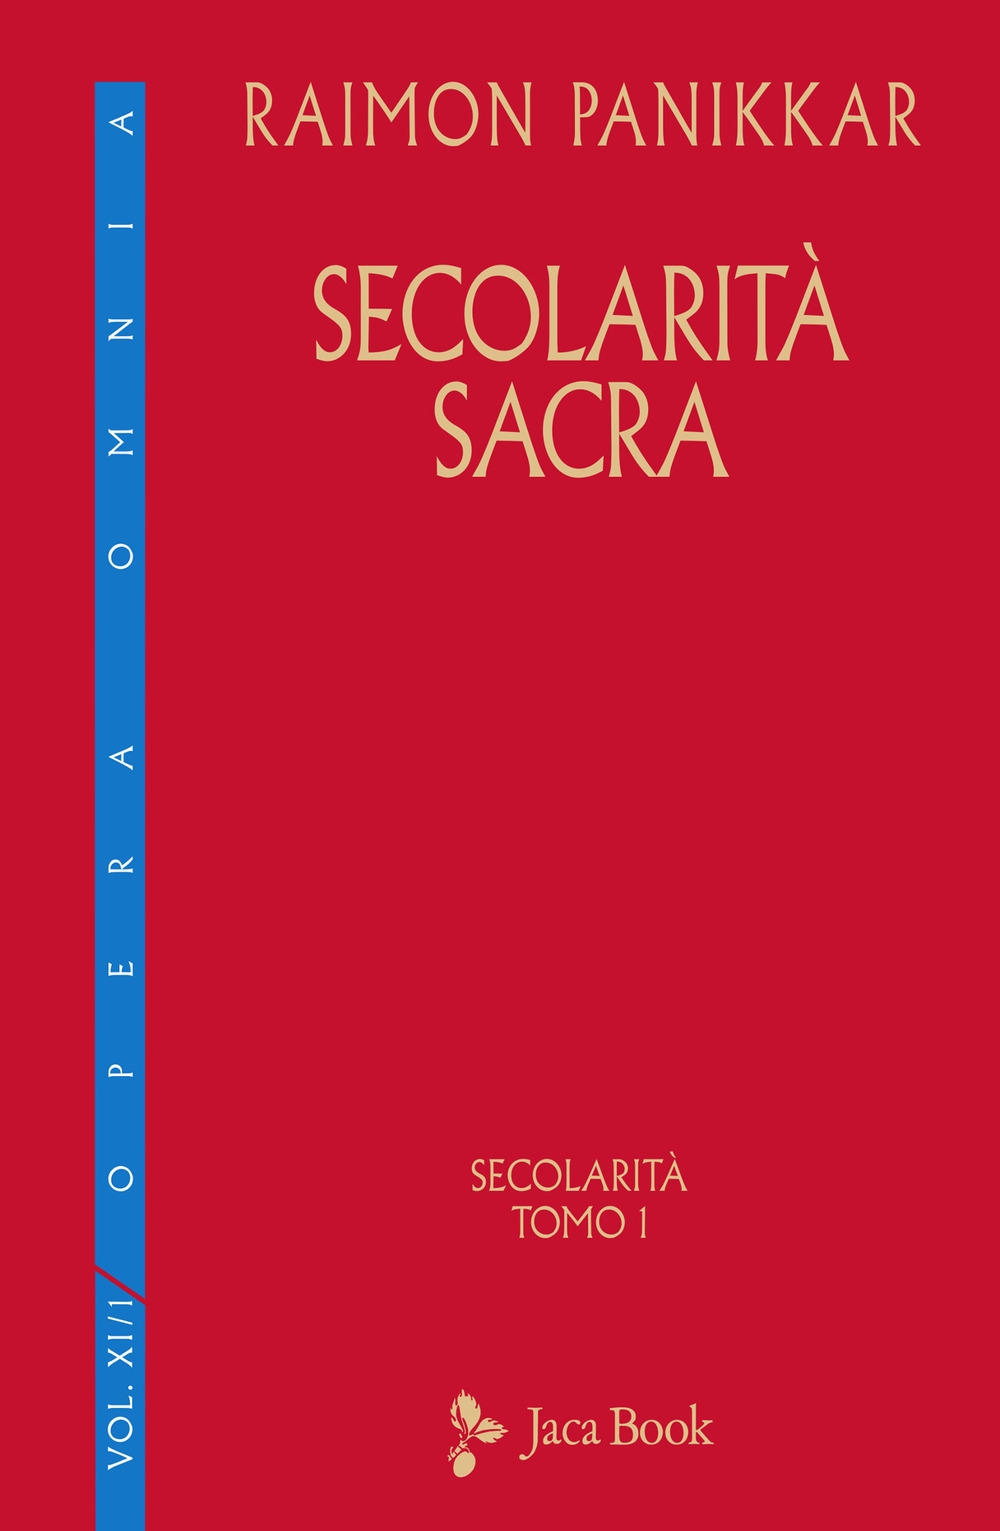 Libri Raimon Panikkar - Secolarita Sacra NUOVO SIGILLATO, EDIZIONE DEL 19/11/2020 SUBITO DISPONIBILE